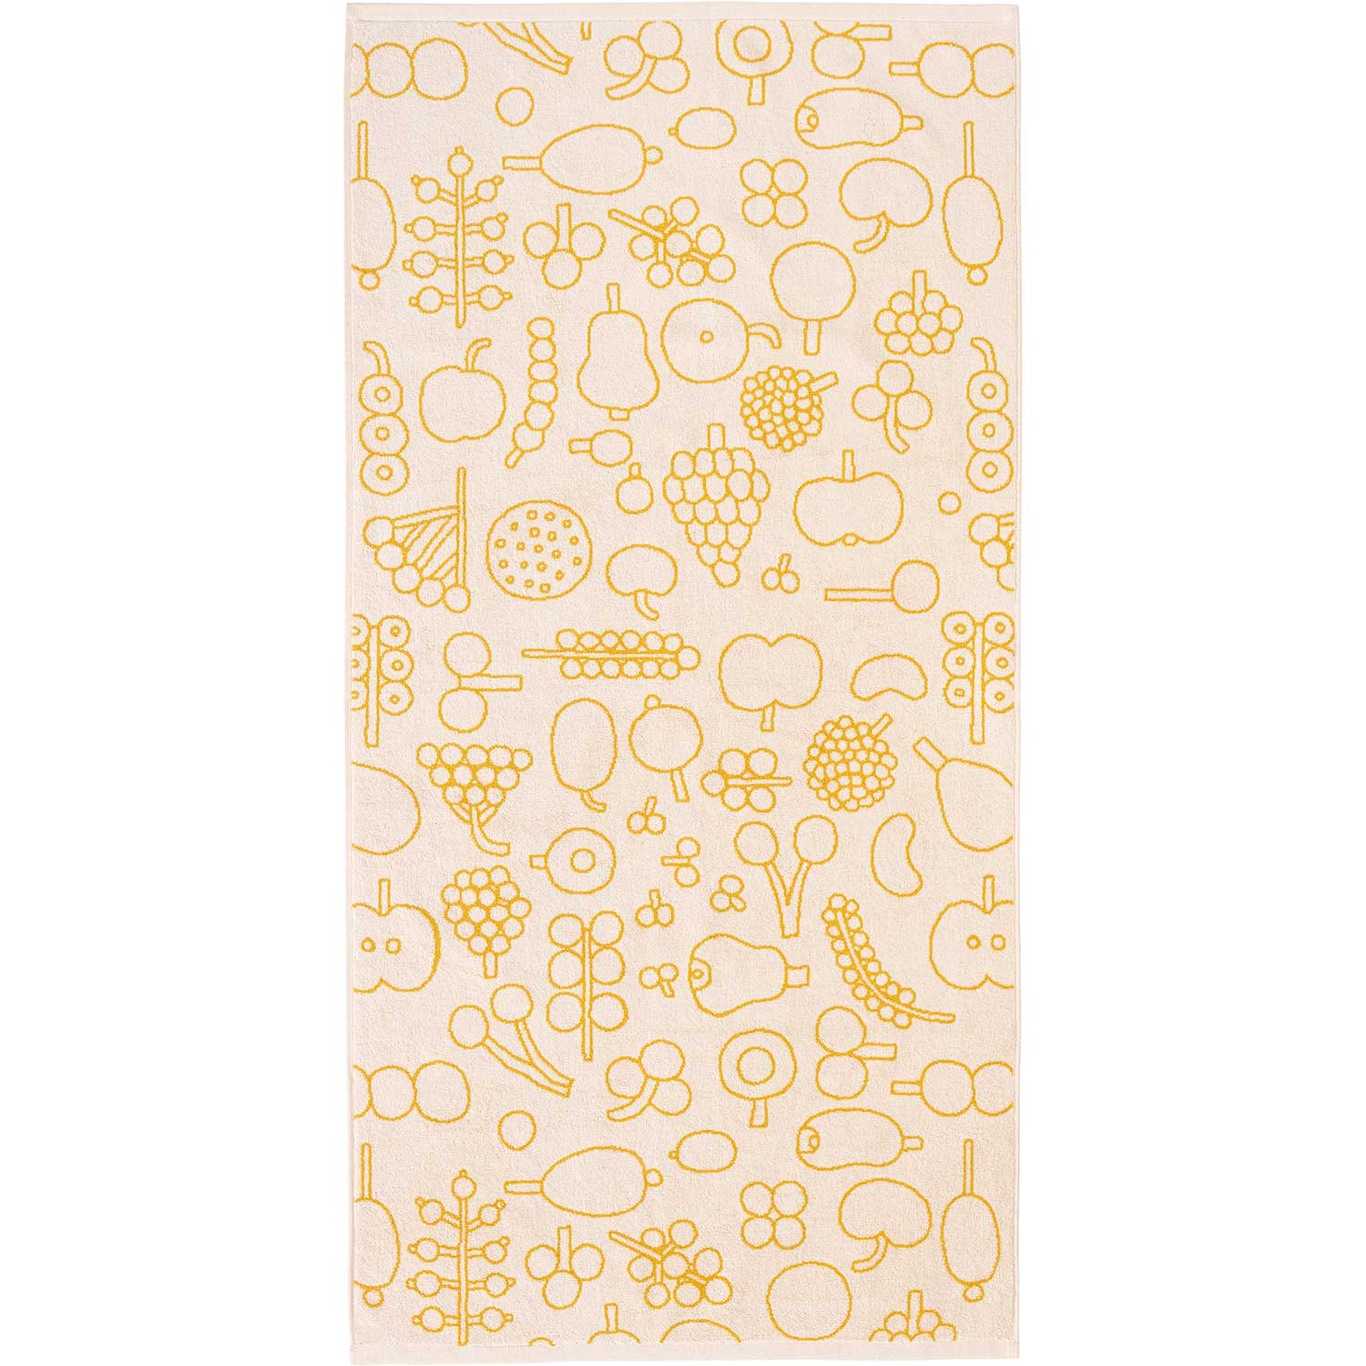 Oiva Toikka Collection Towel, 70x140 cm, Frutta Yellow